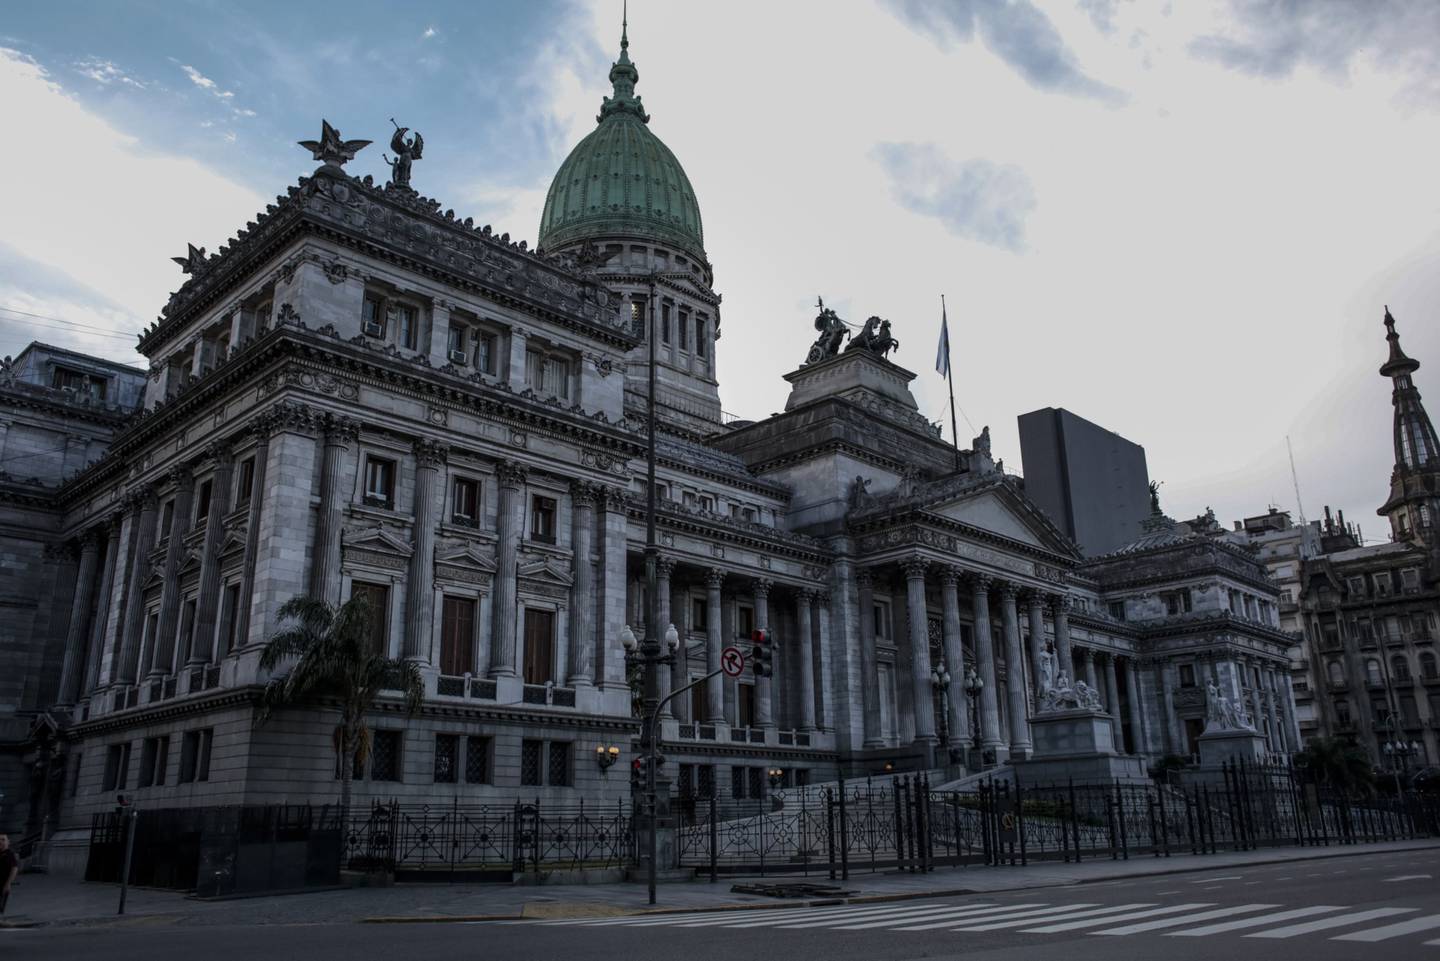 El Congreso de Argentina. Las elecciones legislativas definirán la composición de las dos cámaras del Congreso.dfd